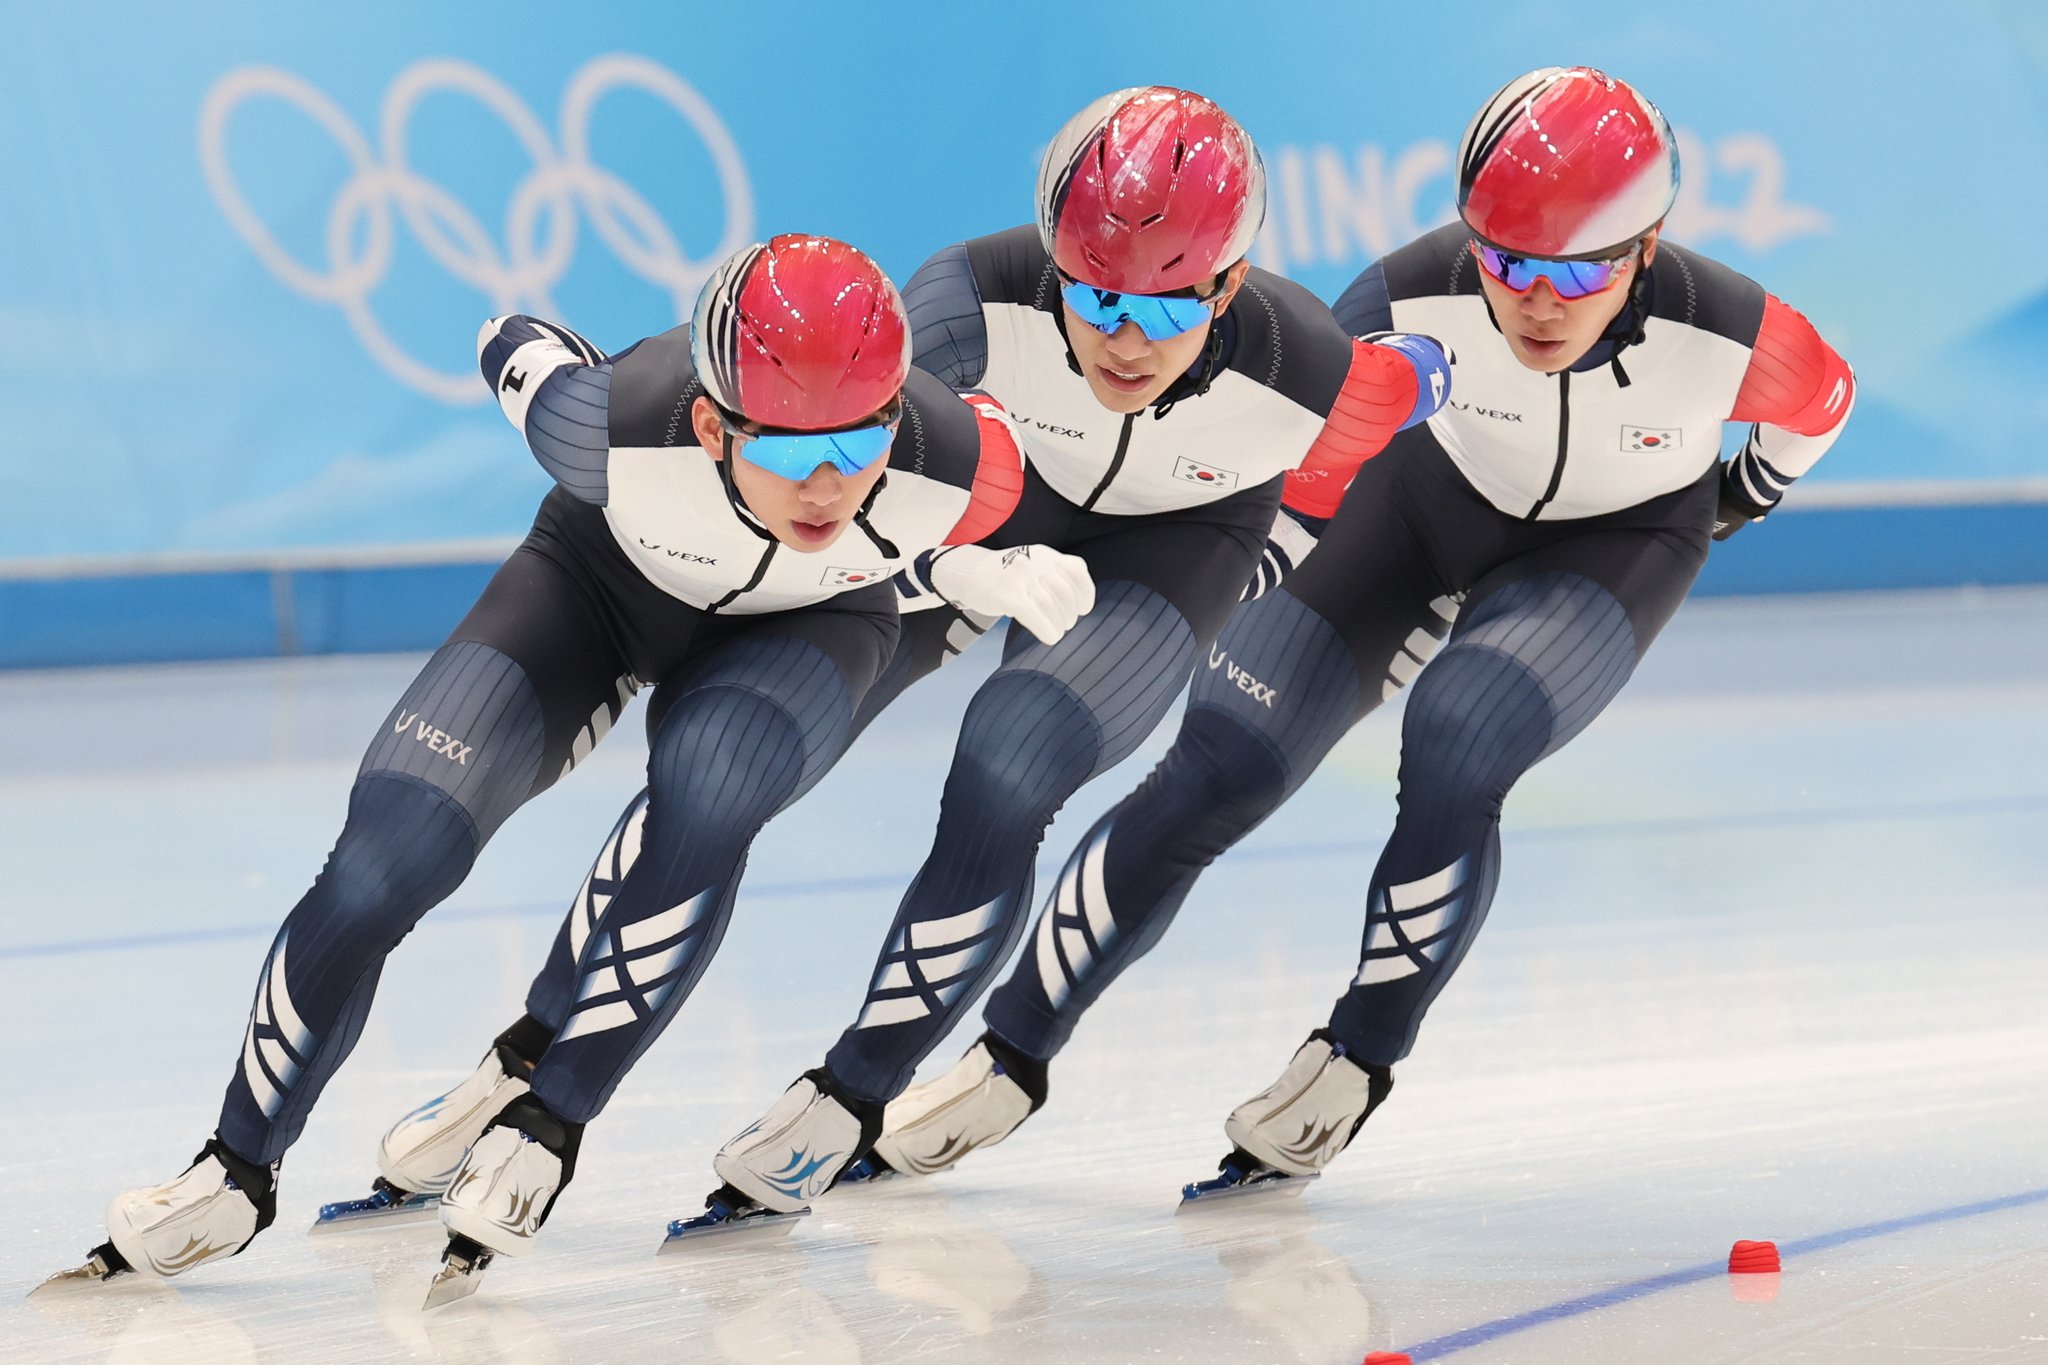 정재원, 박성현, 김민석(왼쪽부터)으로 팀을 이룬 스피드스케이팅 남자 팀 추월대표팀이 5-6위 결정전에서 함께 역주하고 있다. [뉴스1]